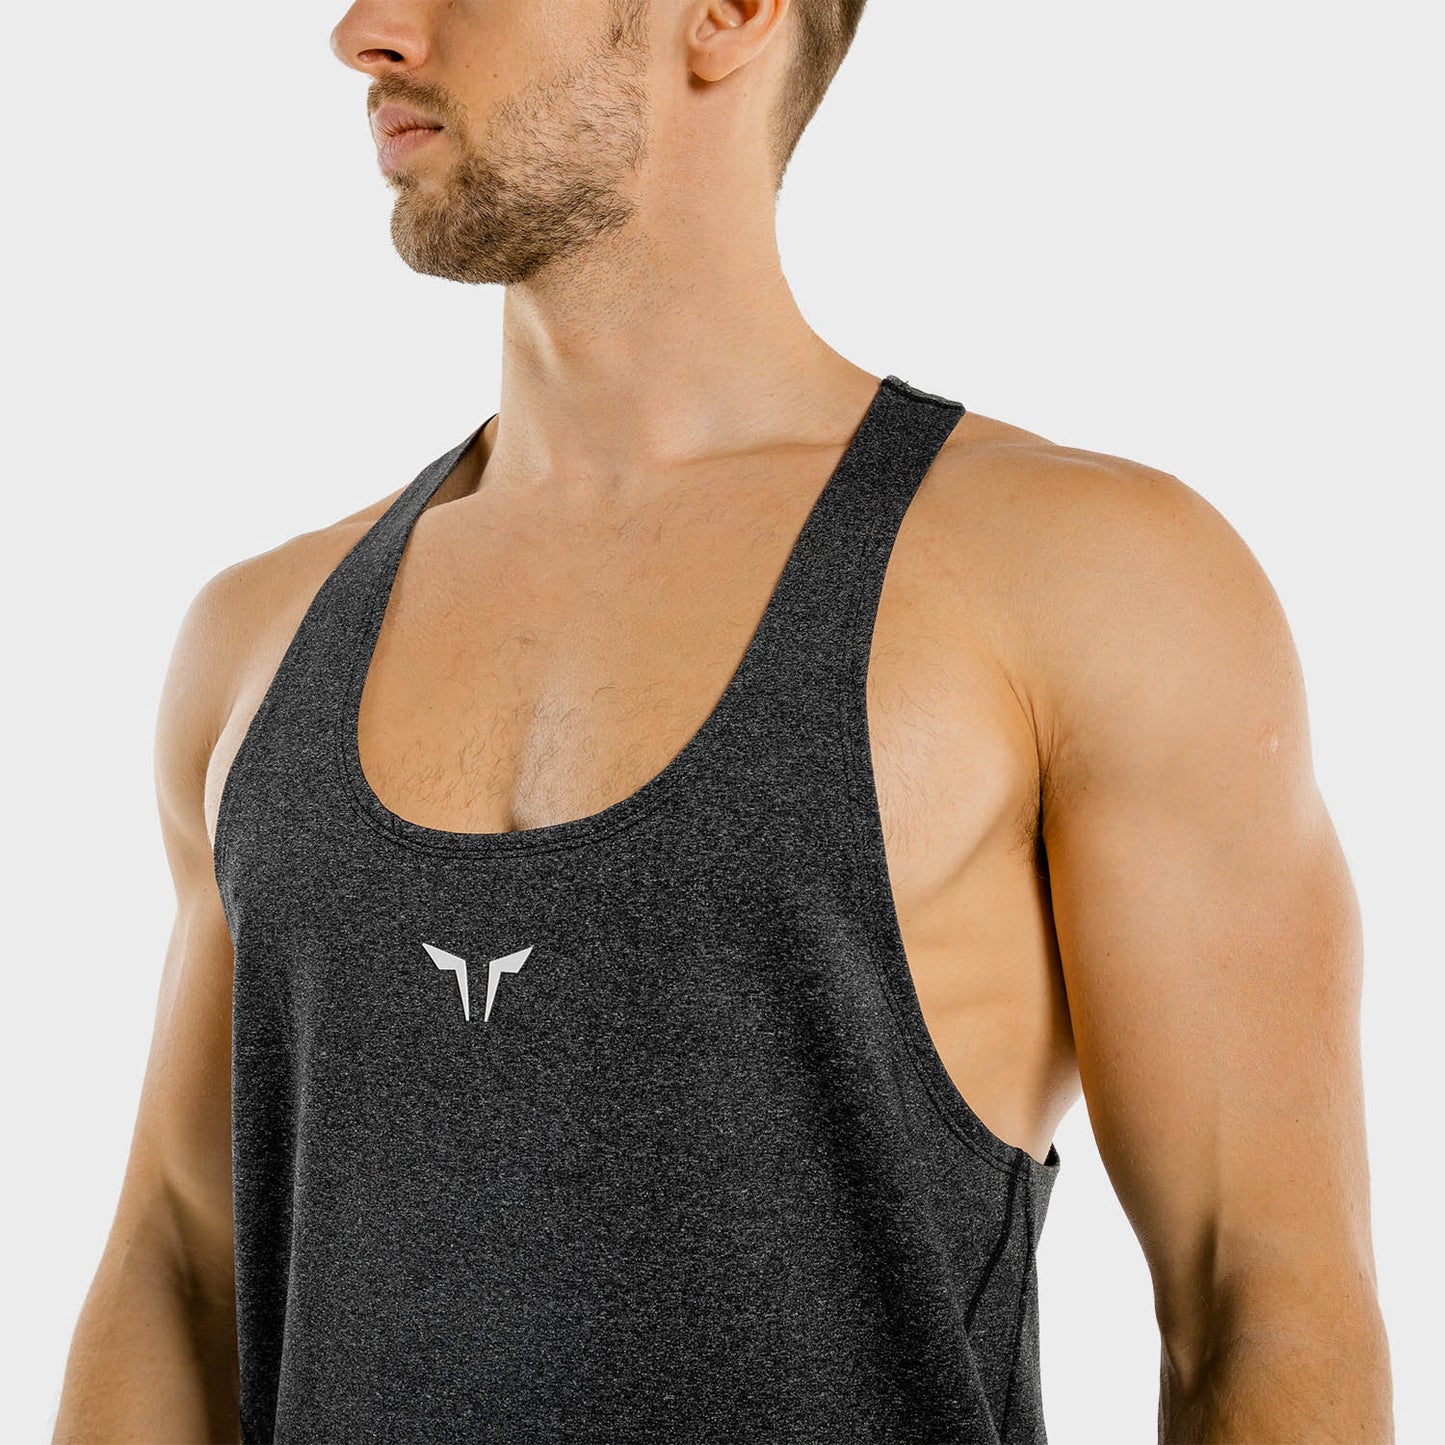 squatwolf-gym-wear-next-gen-stringer-grey-workout-stringers-vests-for-men